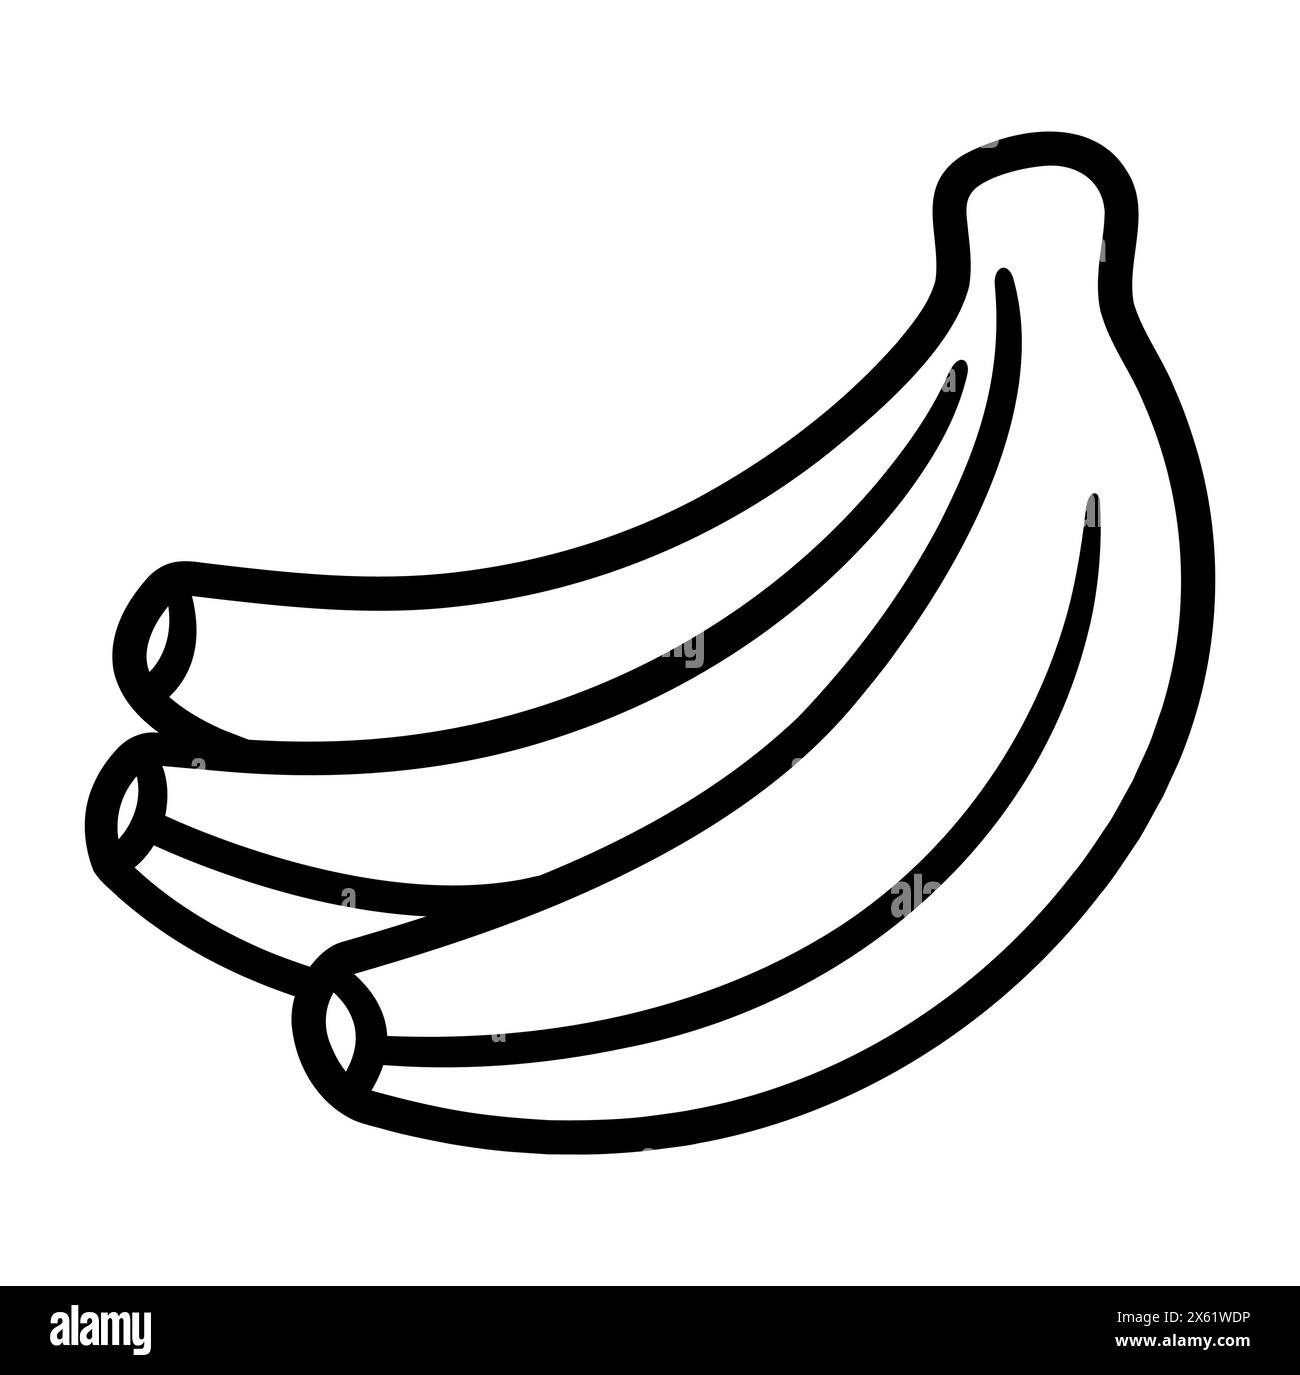 Icône de doodle de bananes dessinée à la main. Bouquet de bananes noir et blanc. Dessin simple, illustration clip art vectorielle. Illustration de Vecteur